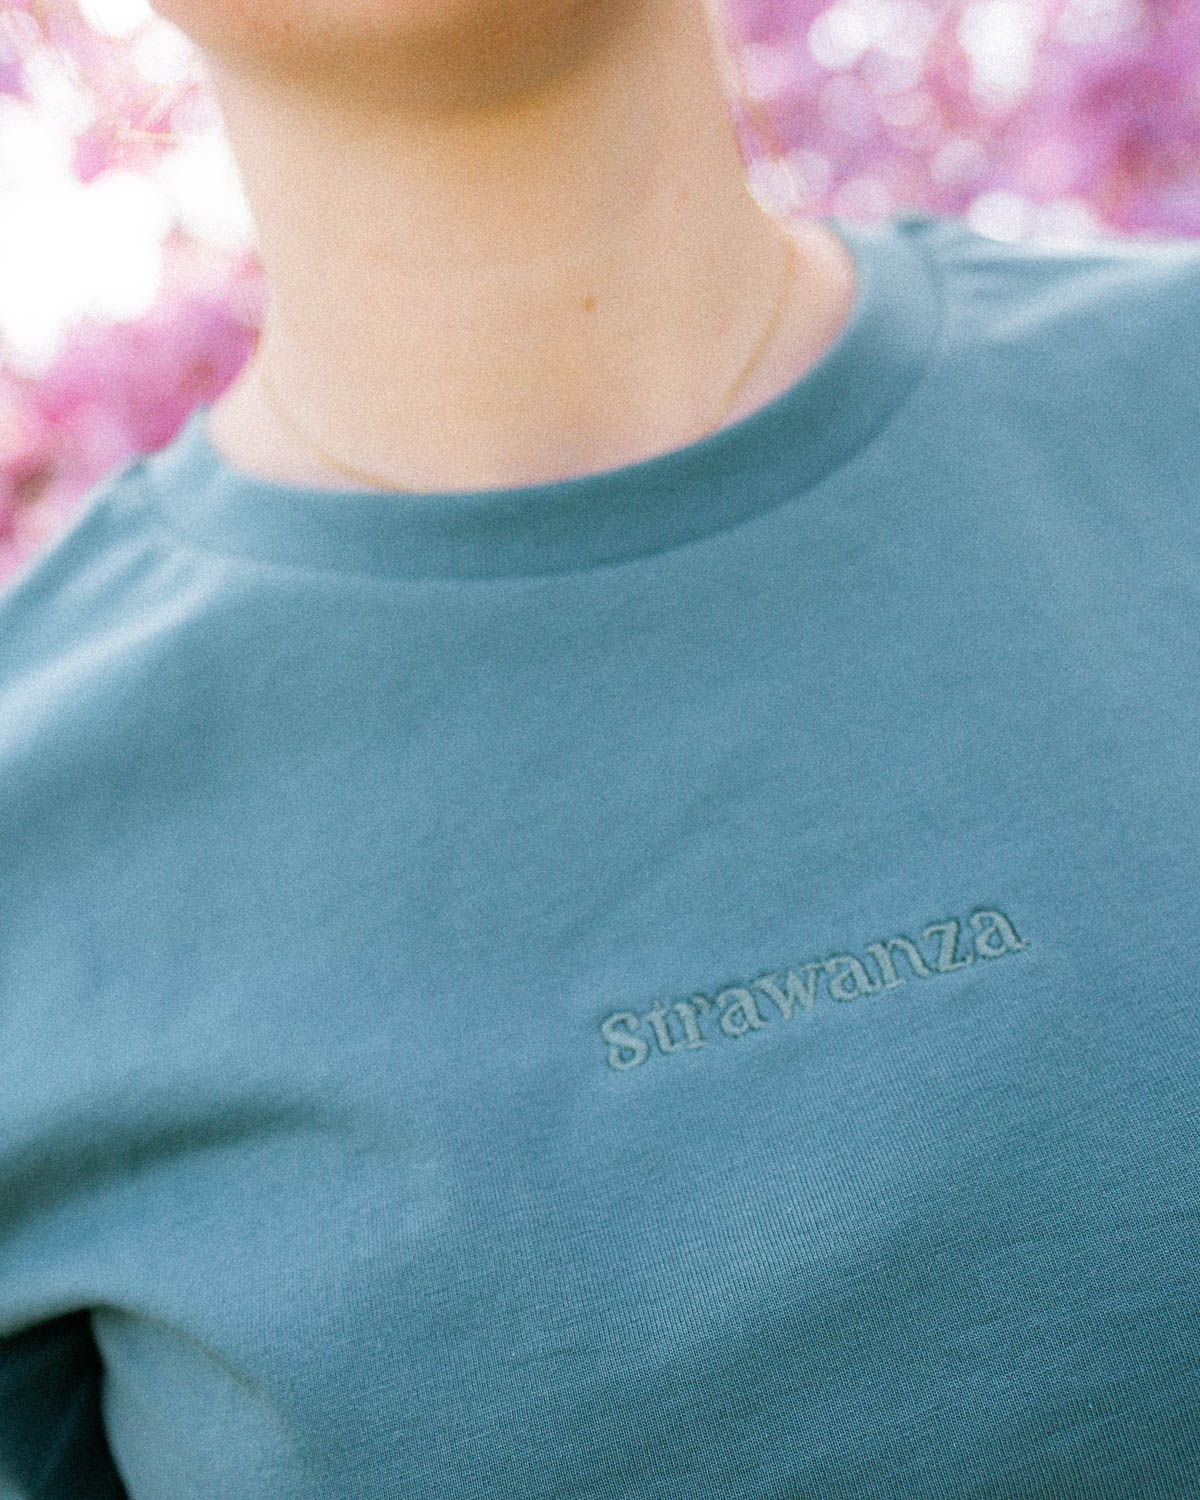 Ein grünes T-Shirt mit einem Ton in Ton "Strawanza" Schriftzug vorne auf der Brust. 